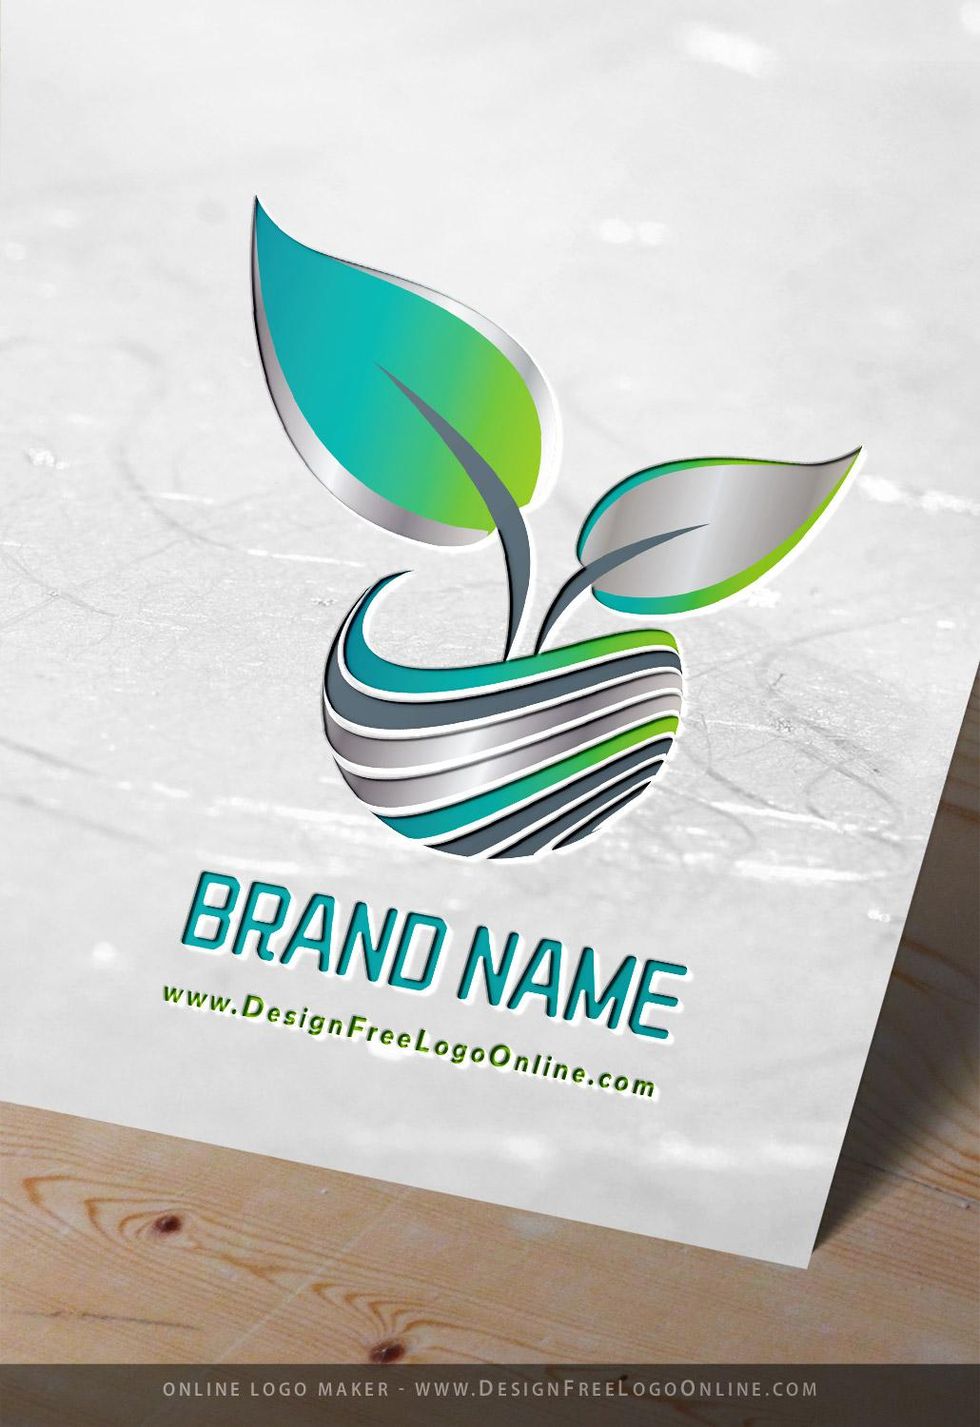 3D Leaf Logo Design Online